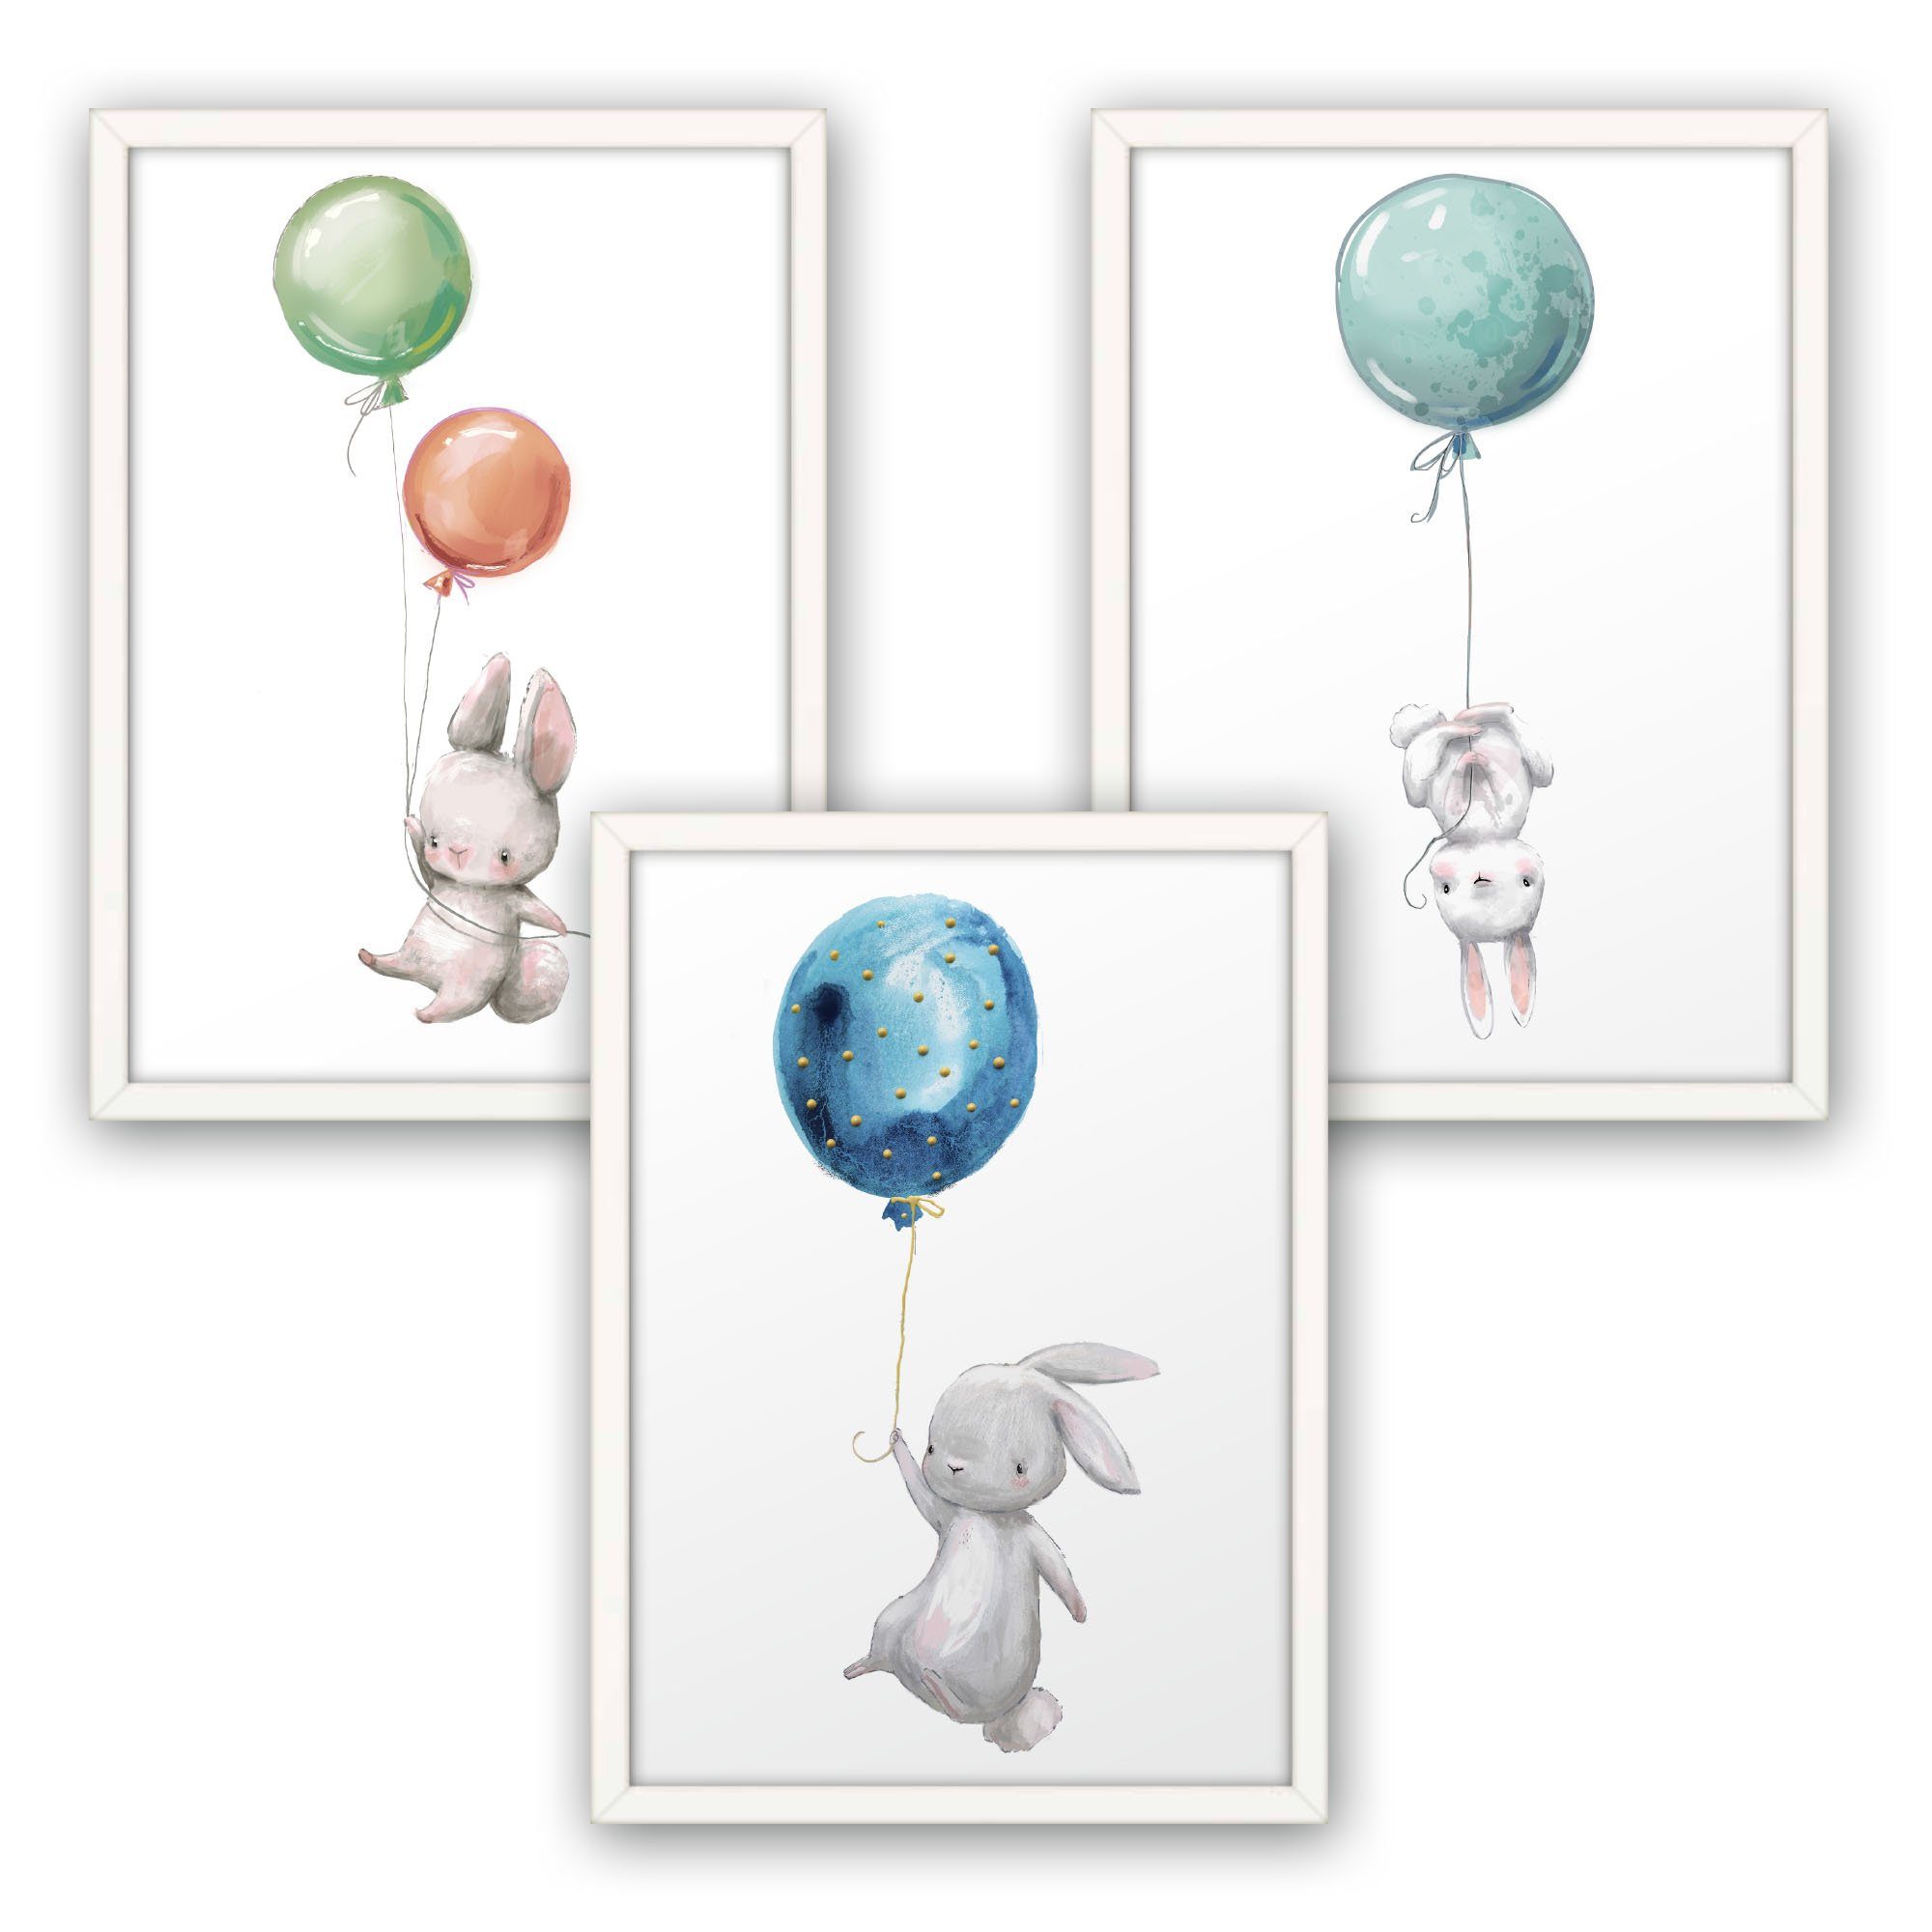 Kreative Feder Poster, Hase, Häschen, Luftballon, Aquarell, Zeichnung,  Kinderzimmer (Set, 3 St), 3-teiliges Poster-Set, Kunstdruck, Wandbild,  optional mit Rahmen, wahlw. in DIN A4 / A3, 3-WP026